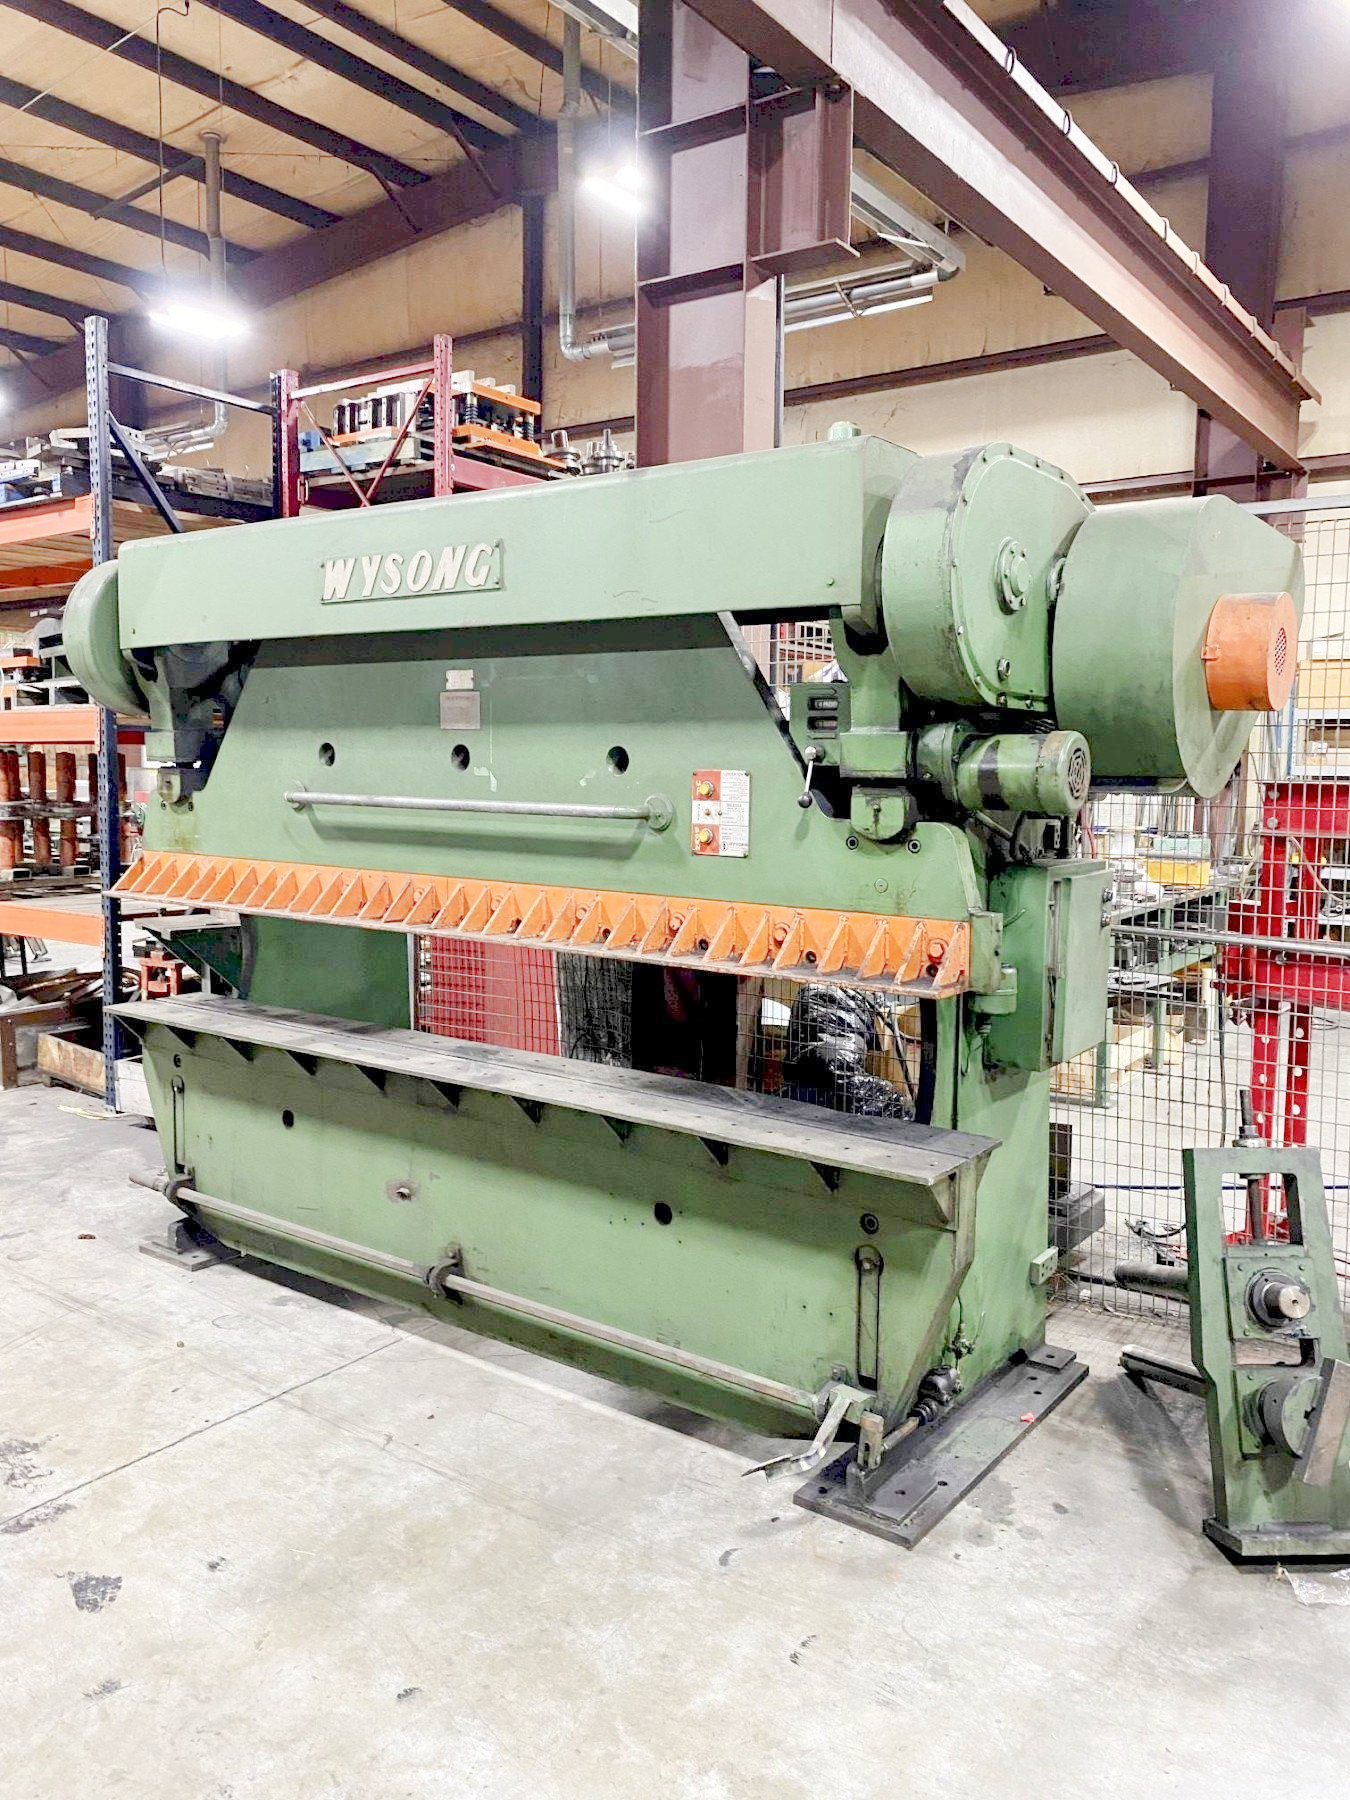 Wysong Mechanical Press Brake (used) Item # UE-012422M (Ohio)